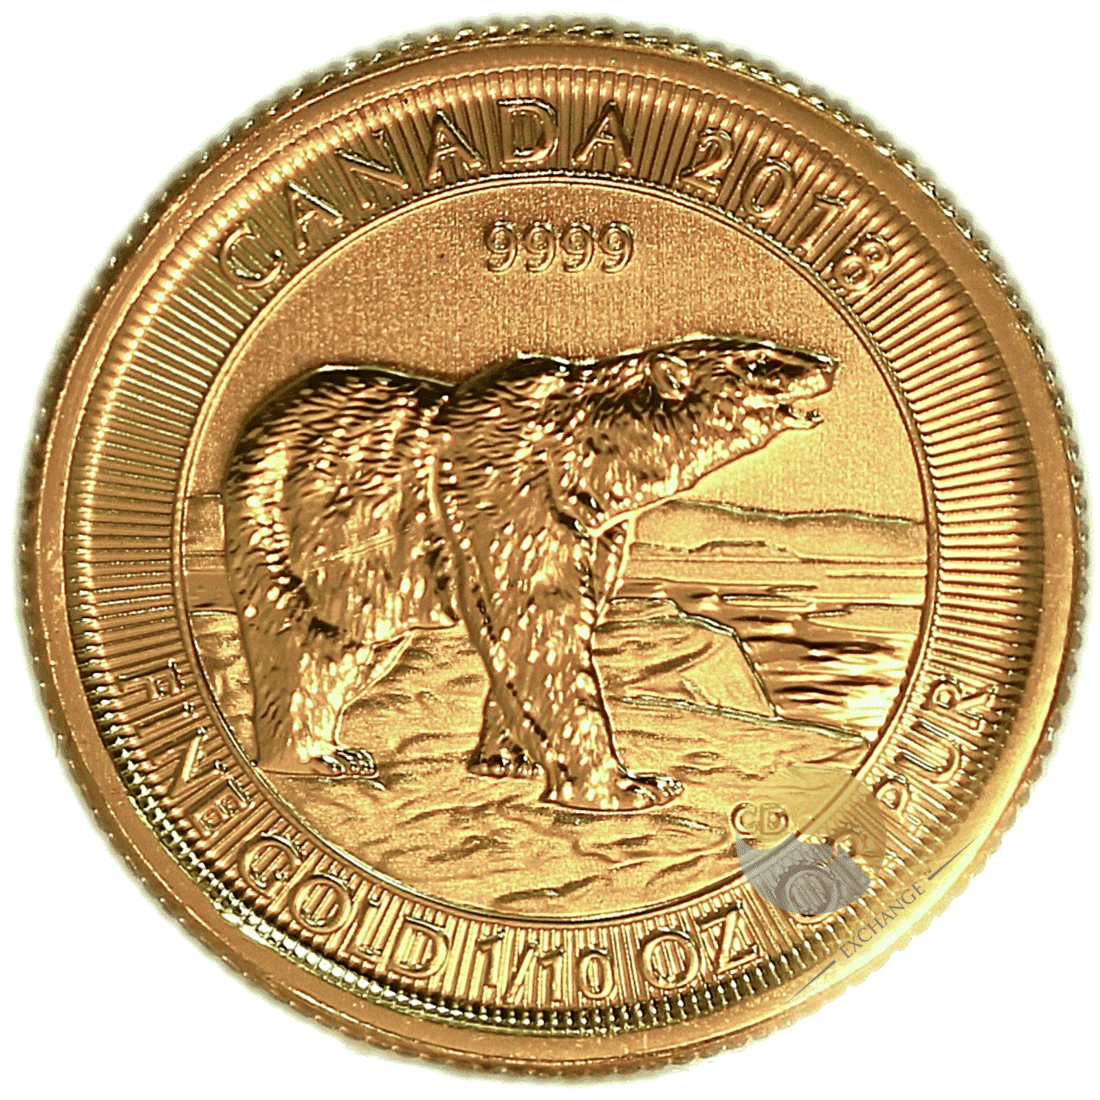 Gold Canadian Polar Bear Coin 1/10th Ounce